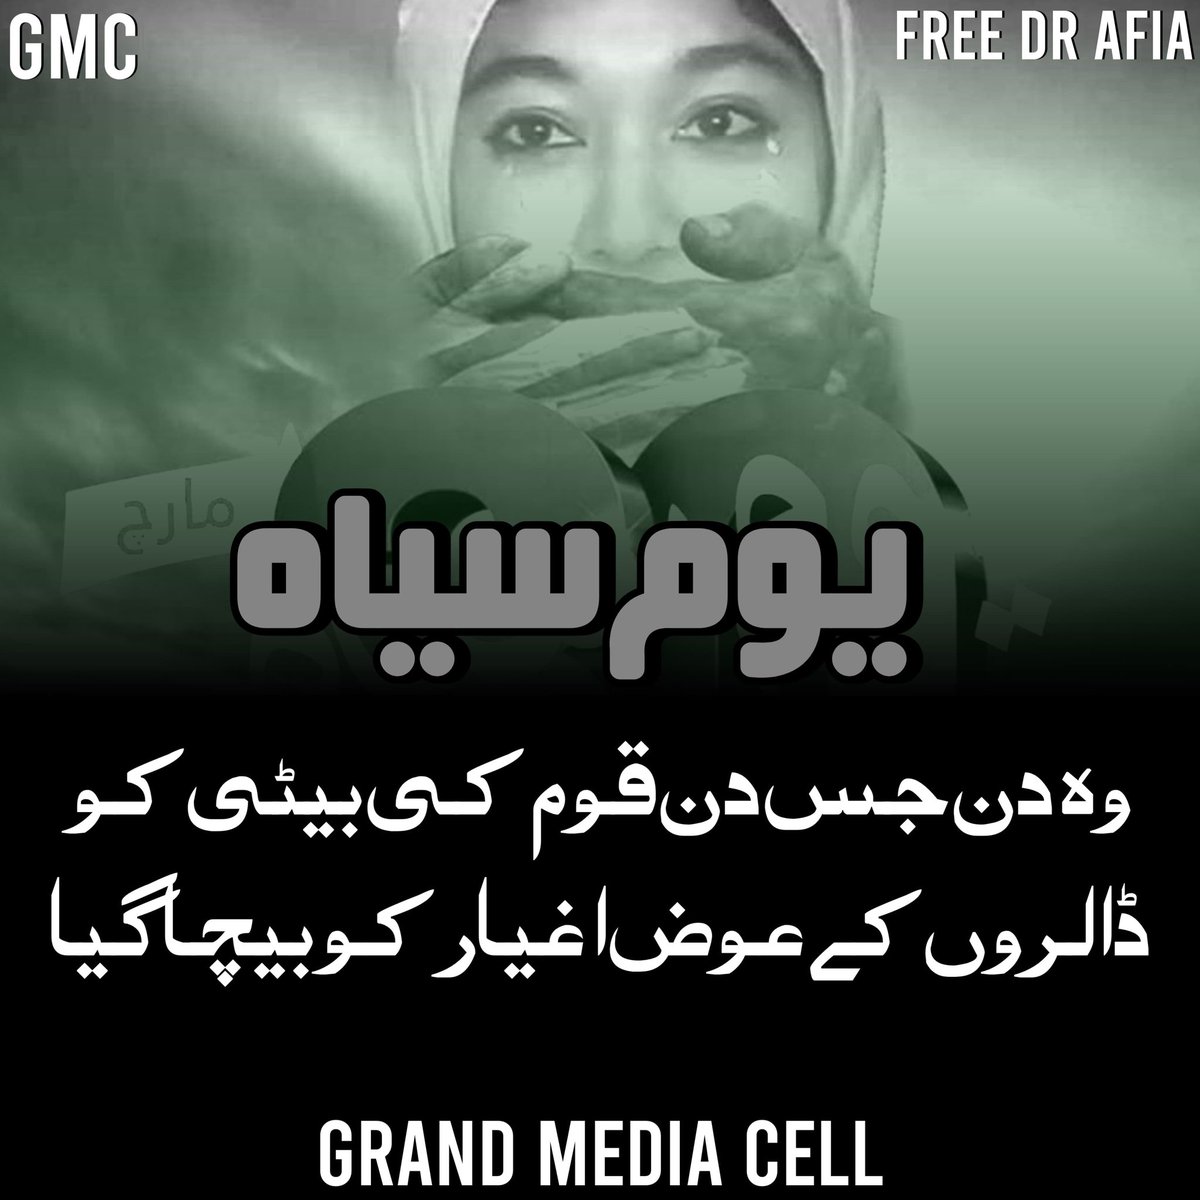 اس سیاہ دن کے موقع پر اپنی بہن کی رہائی کے لئے آواز اٹھائیے ۔ #حکمران_خاموش_عافیہ_منتظر